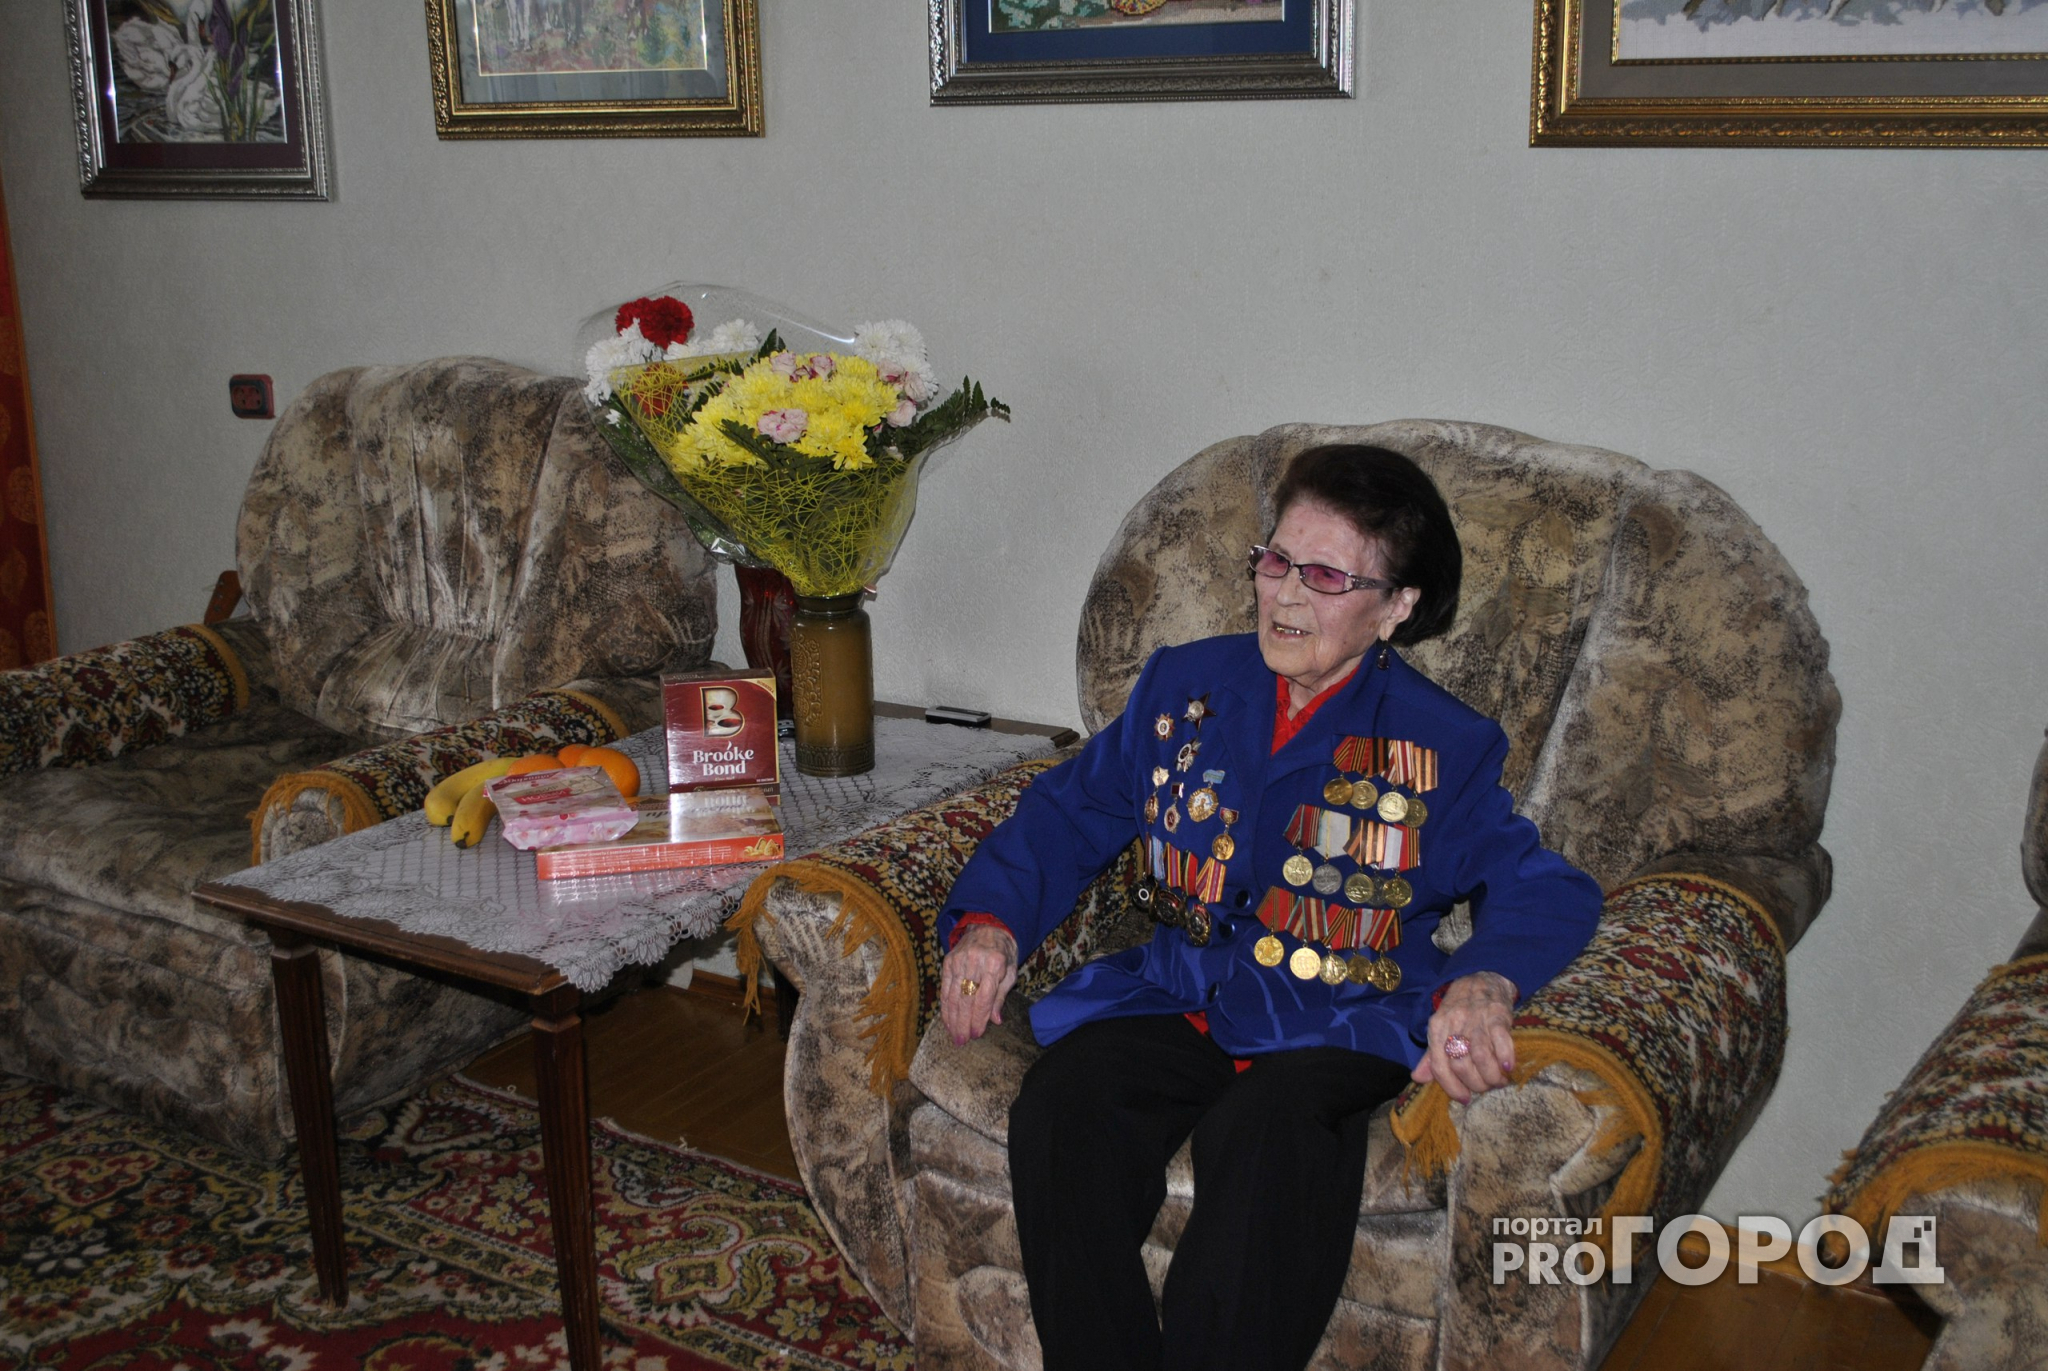 Наши победители: уроженка Чувашии Александра Киселева рассказала, как связисты приближали День Победы